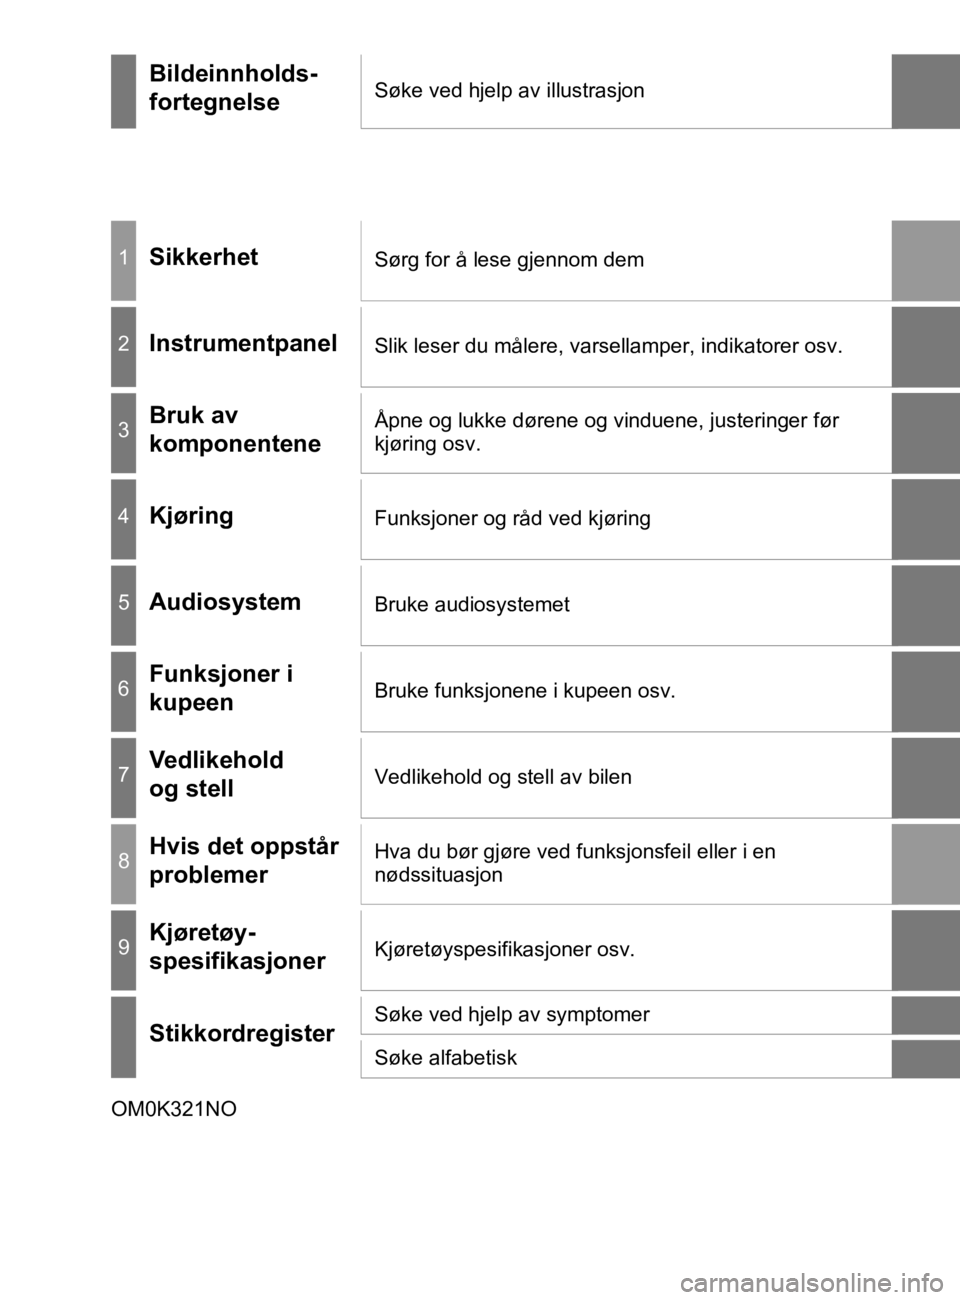 TOYOTA HILUX 2020  Instruksjoner for bruk (in Norwegian) HILUX_OM_OM0K321NO
Bildeinnholds-
fortegnelseSøke ved hjelp av illustrasjon
1SikkerhetSørg for å lese gjennom dem
2InstrumentpanelSlik leser du målere, varsellamper, indikatorer osv.
3Bruk av 
kom